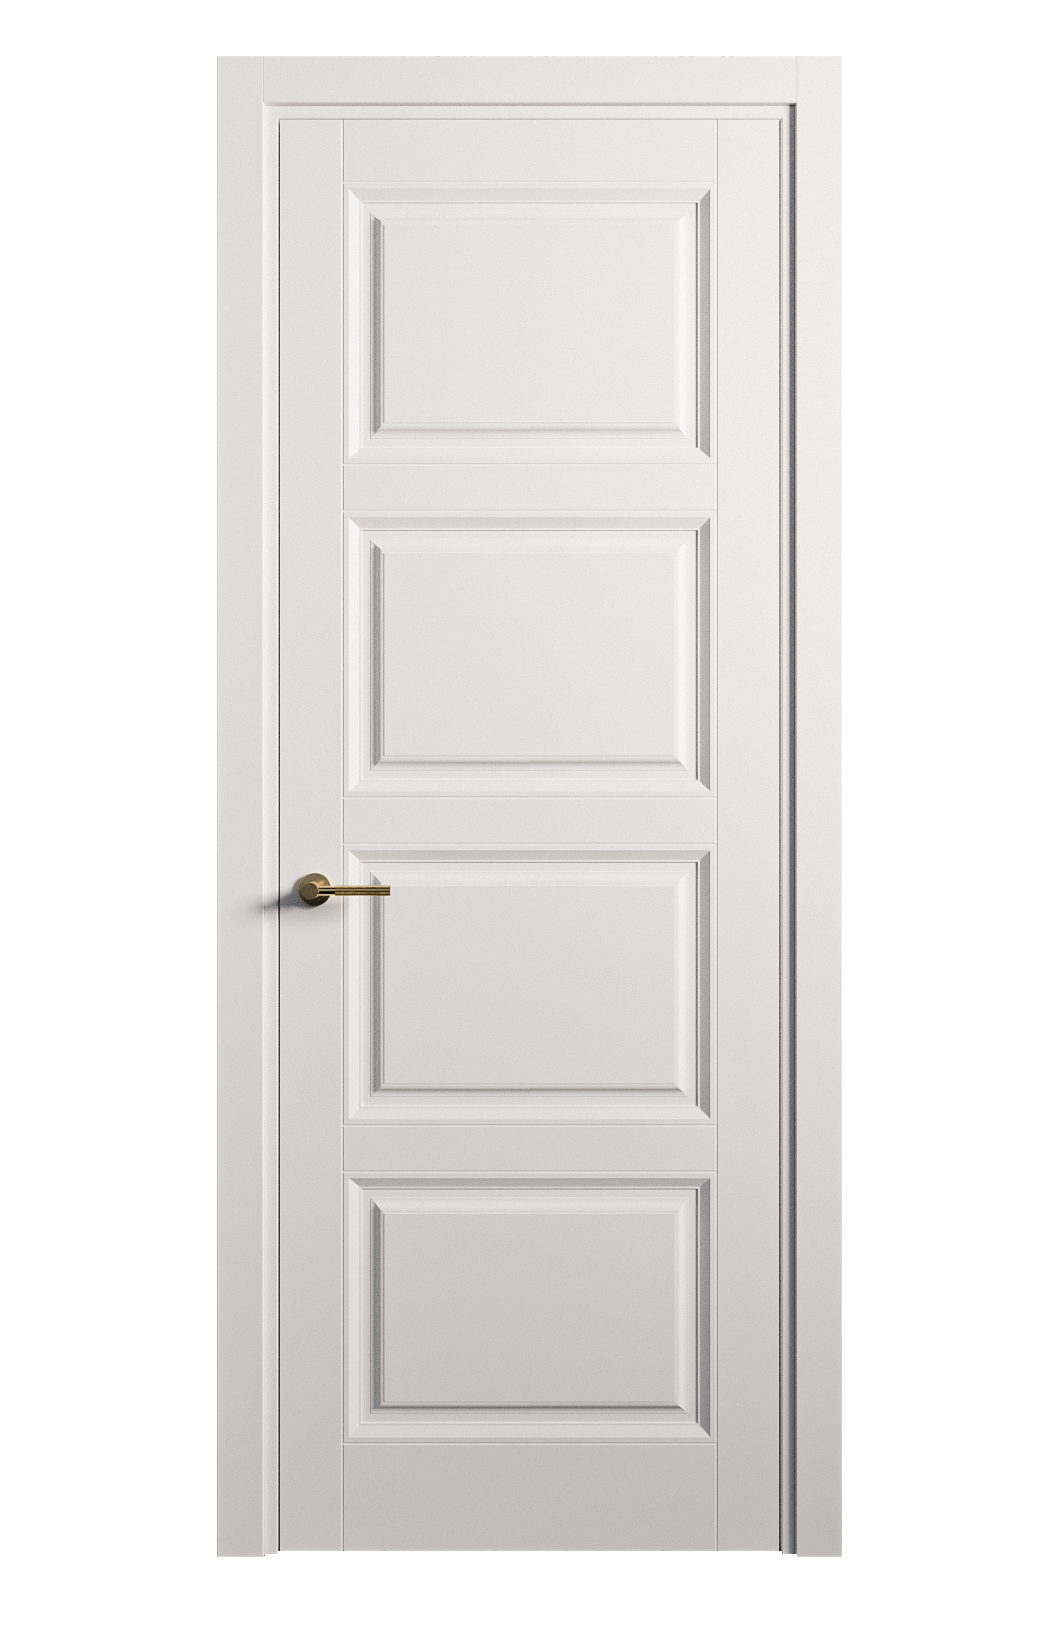 Межкомнатная дверь Venezia-4 глухая эмаль ral 9003 25818